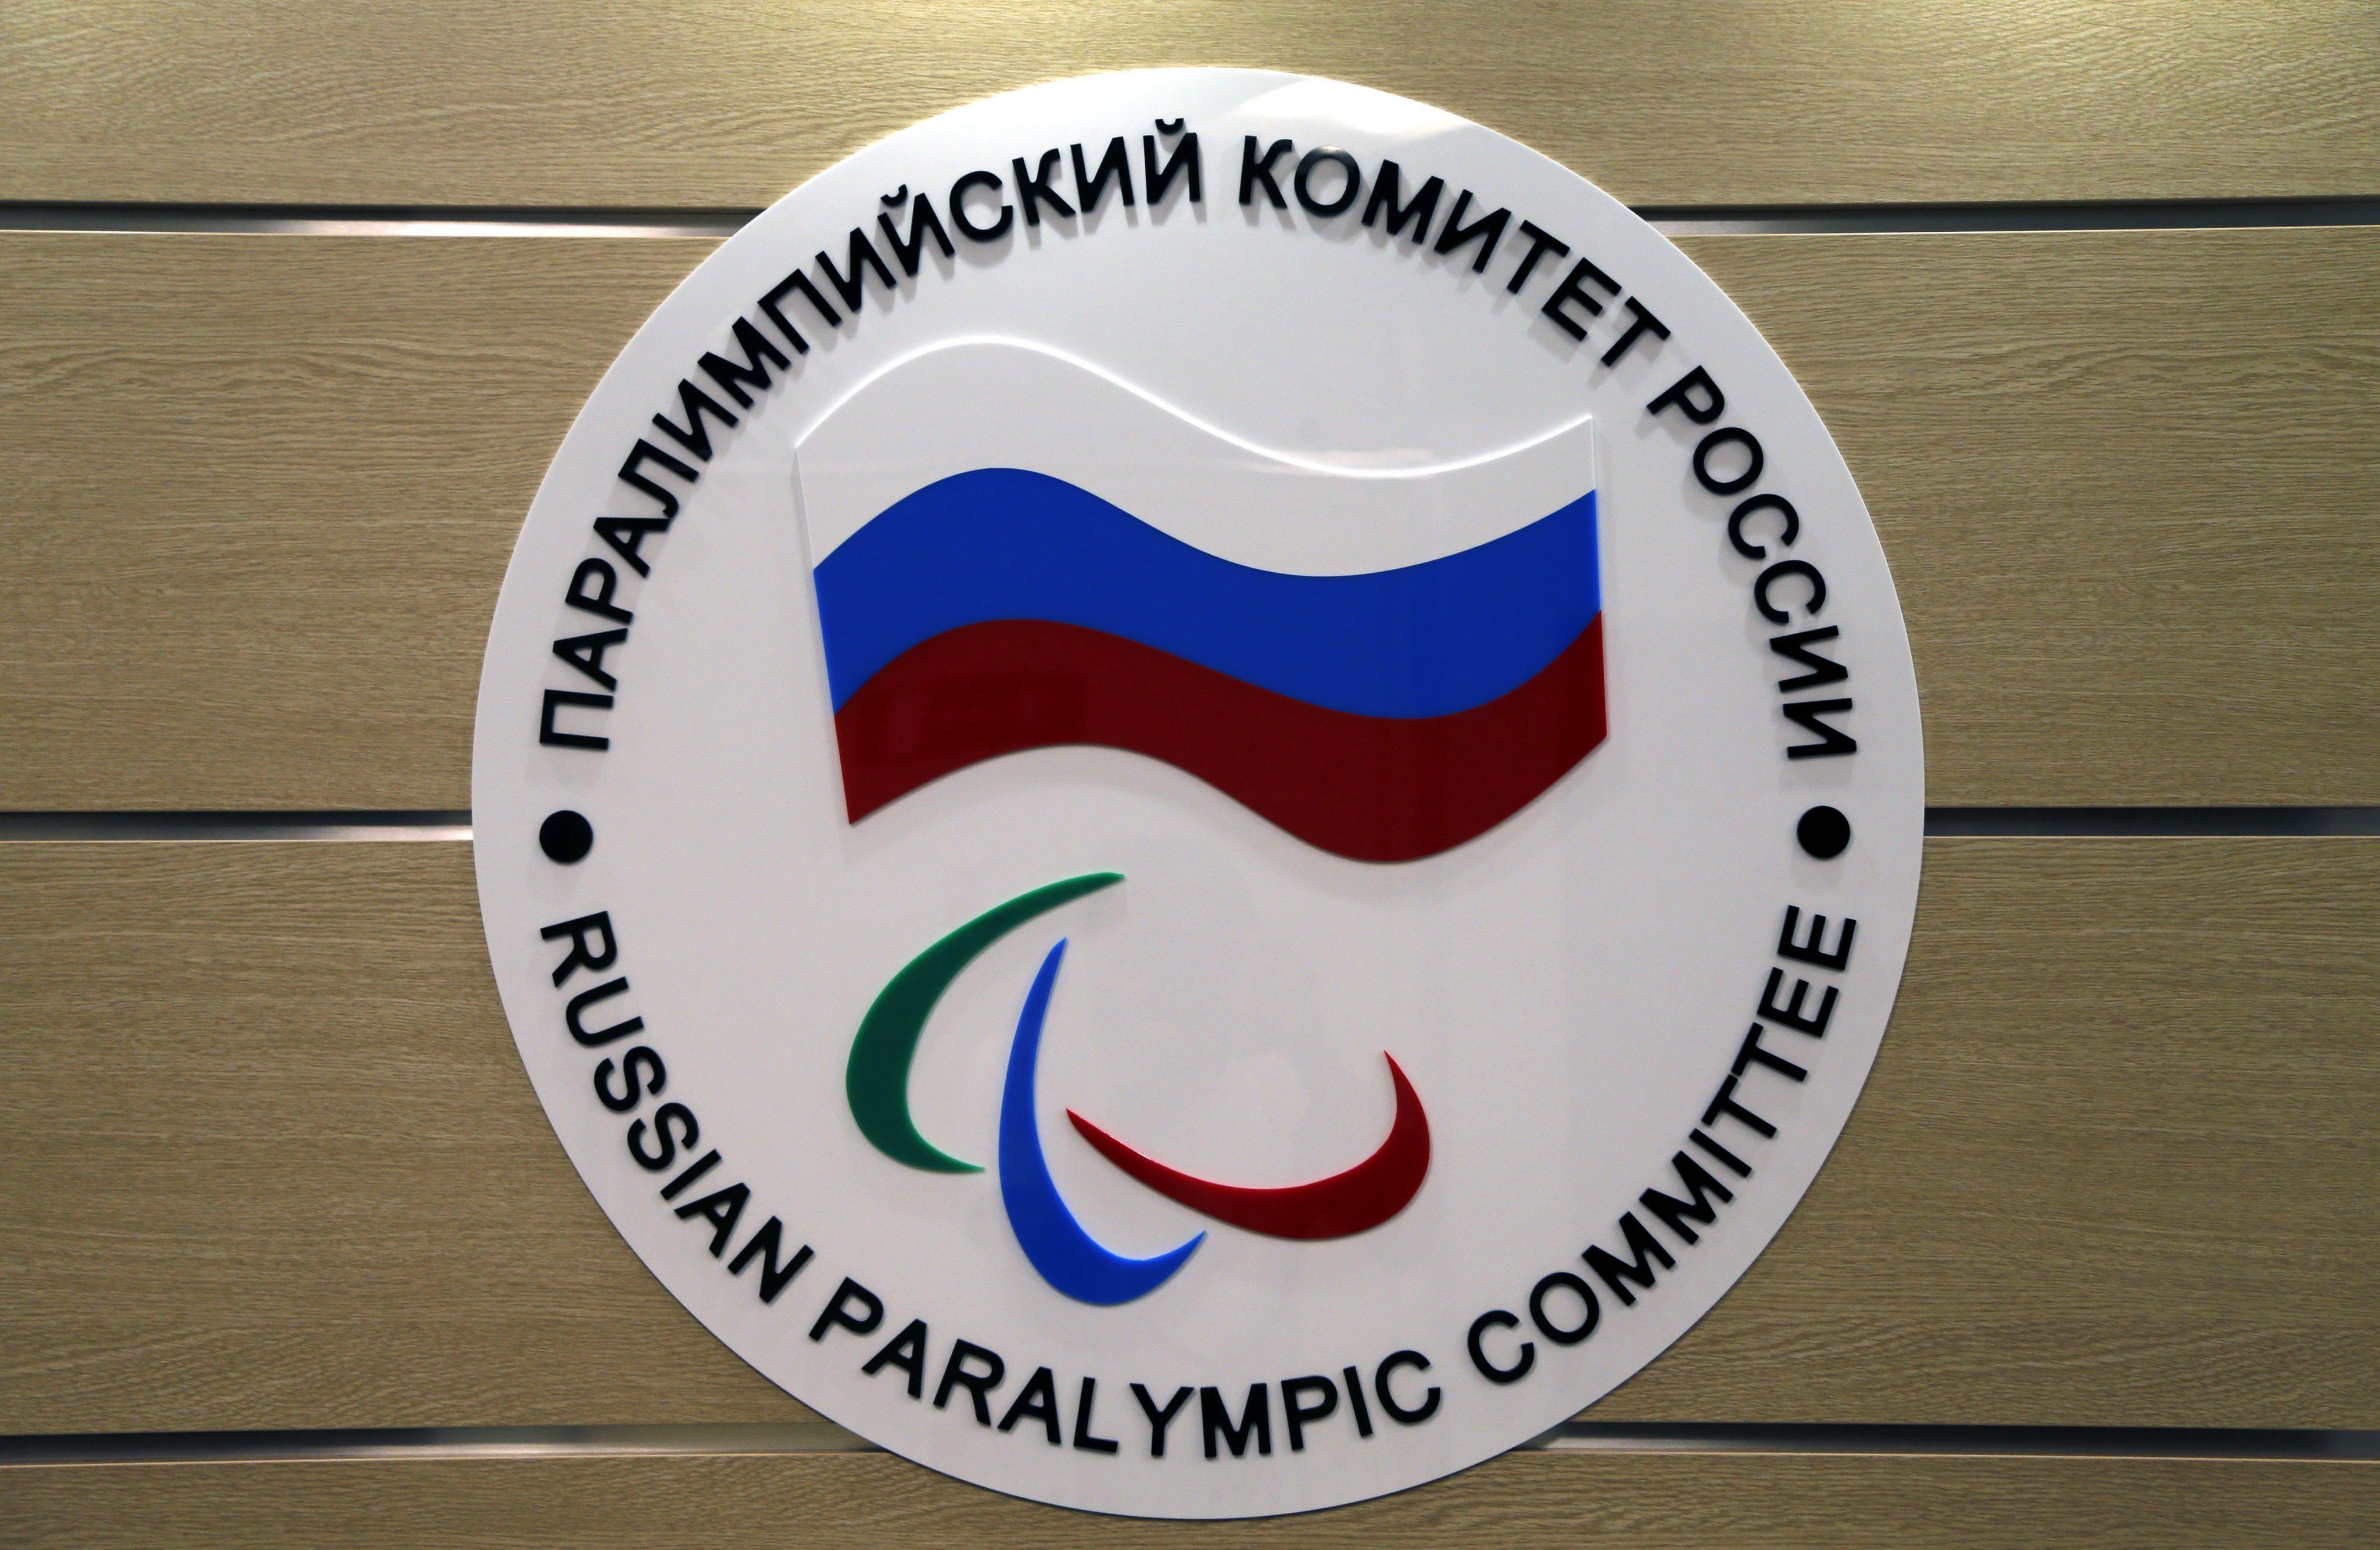 Rusia queda excluida de los Juegos Paralímpicos por el escándalo del dopaje